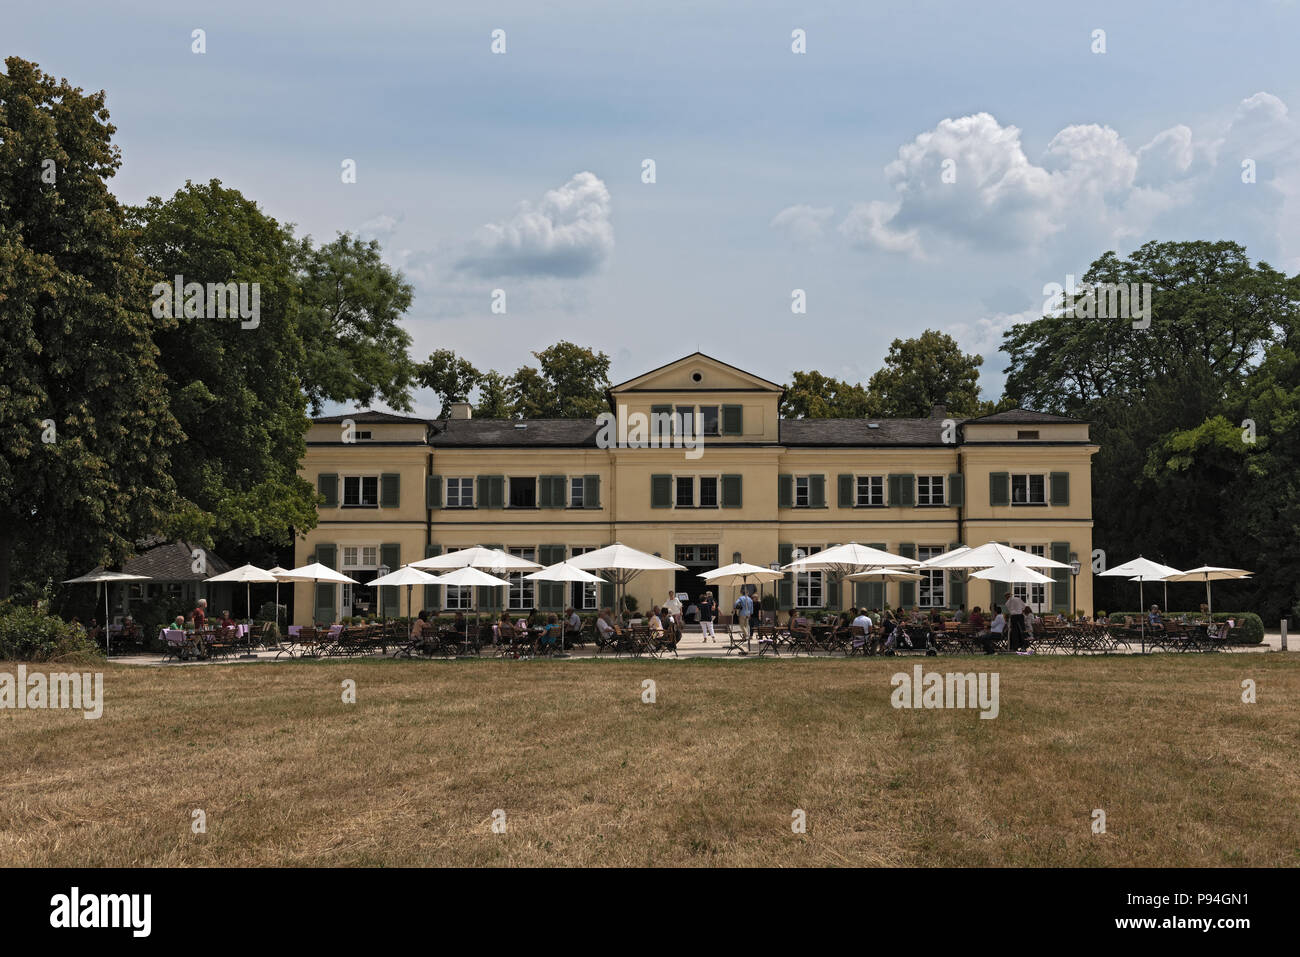 Gli ospiti sulla terrazza di fronte al ristorante nel parco storico Schoenbusch, Aschaffenburg, Germania. Foto Stock